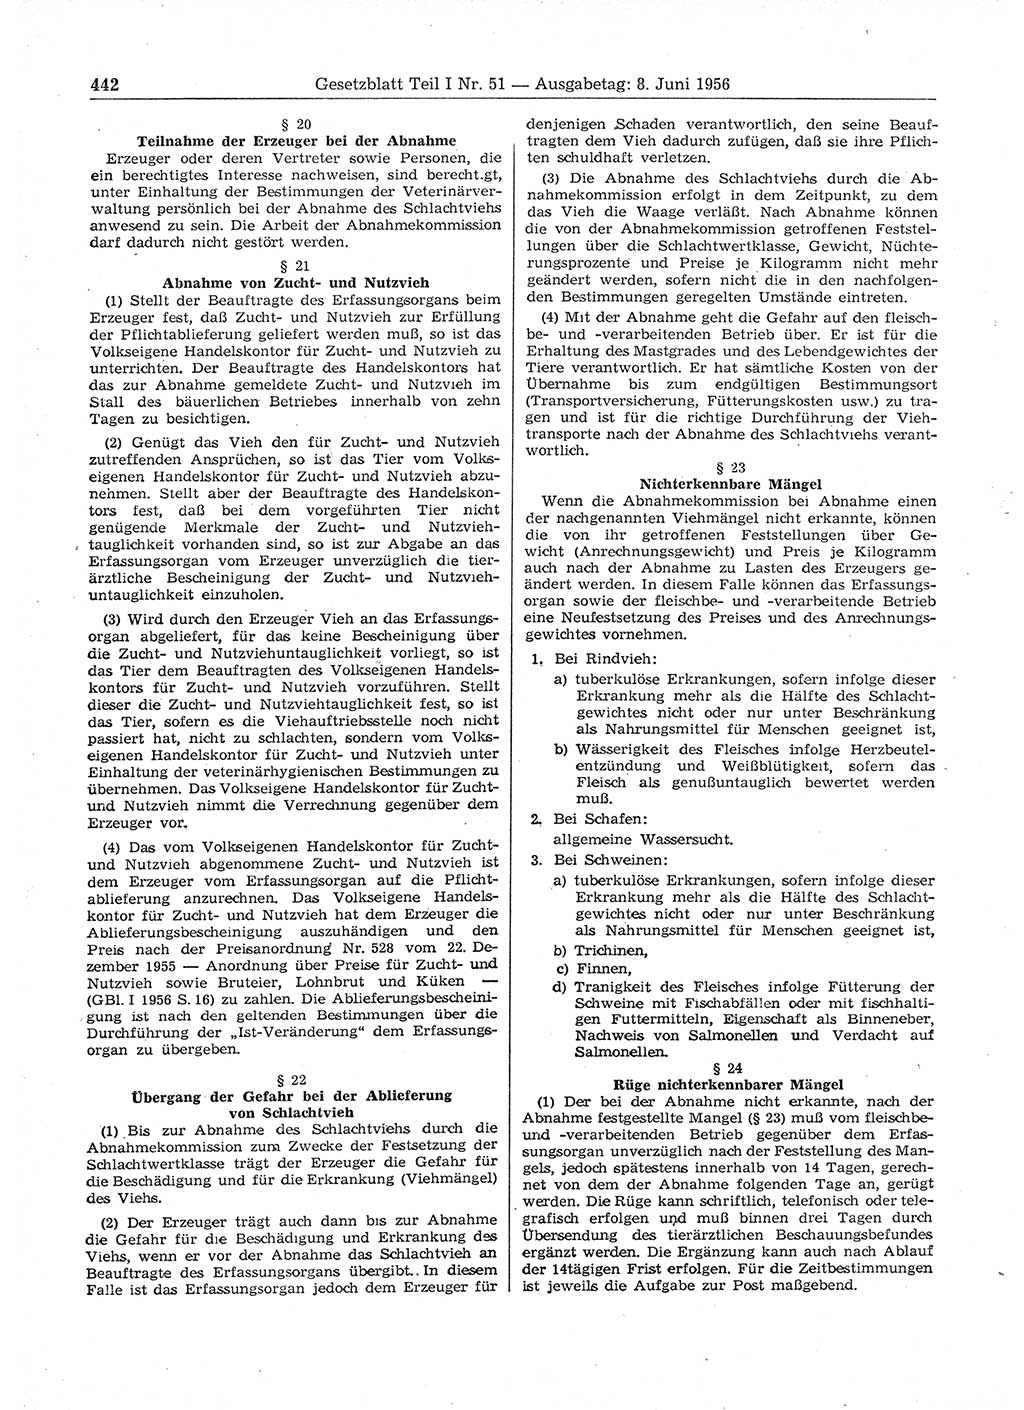 Gesetzblatt (GBl.) der Deutschen Demokratischen Republik (DDR) Teil Ⅰ 1956, Seite 442 (GBl. DDR Ⅰ 1956, S. 442)